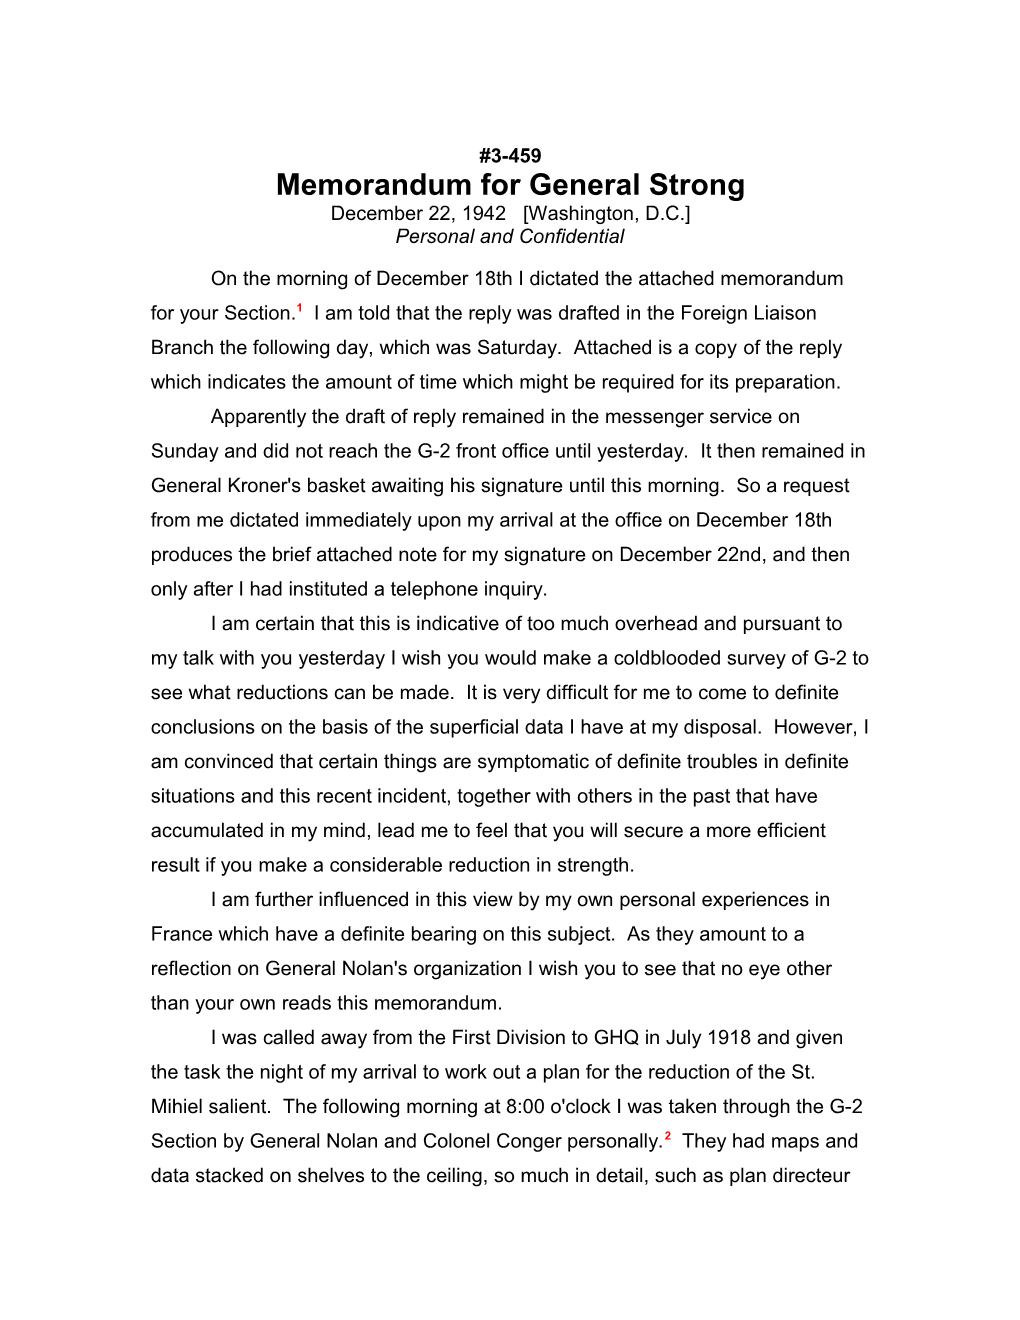 Memorandum for General Strong